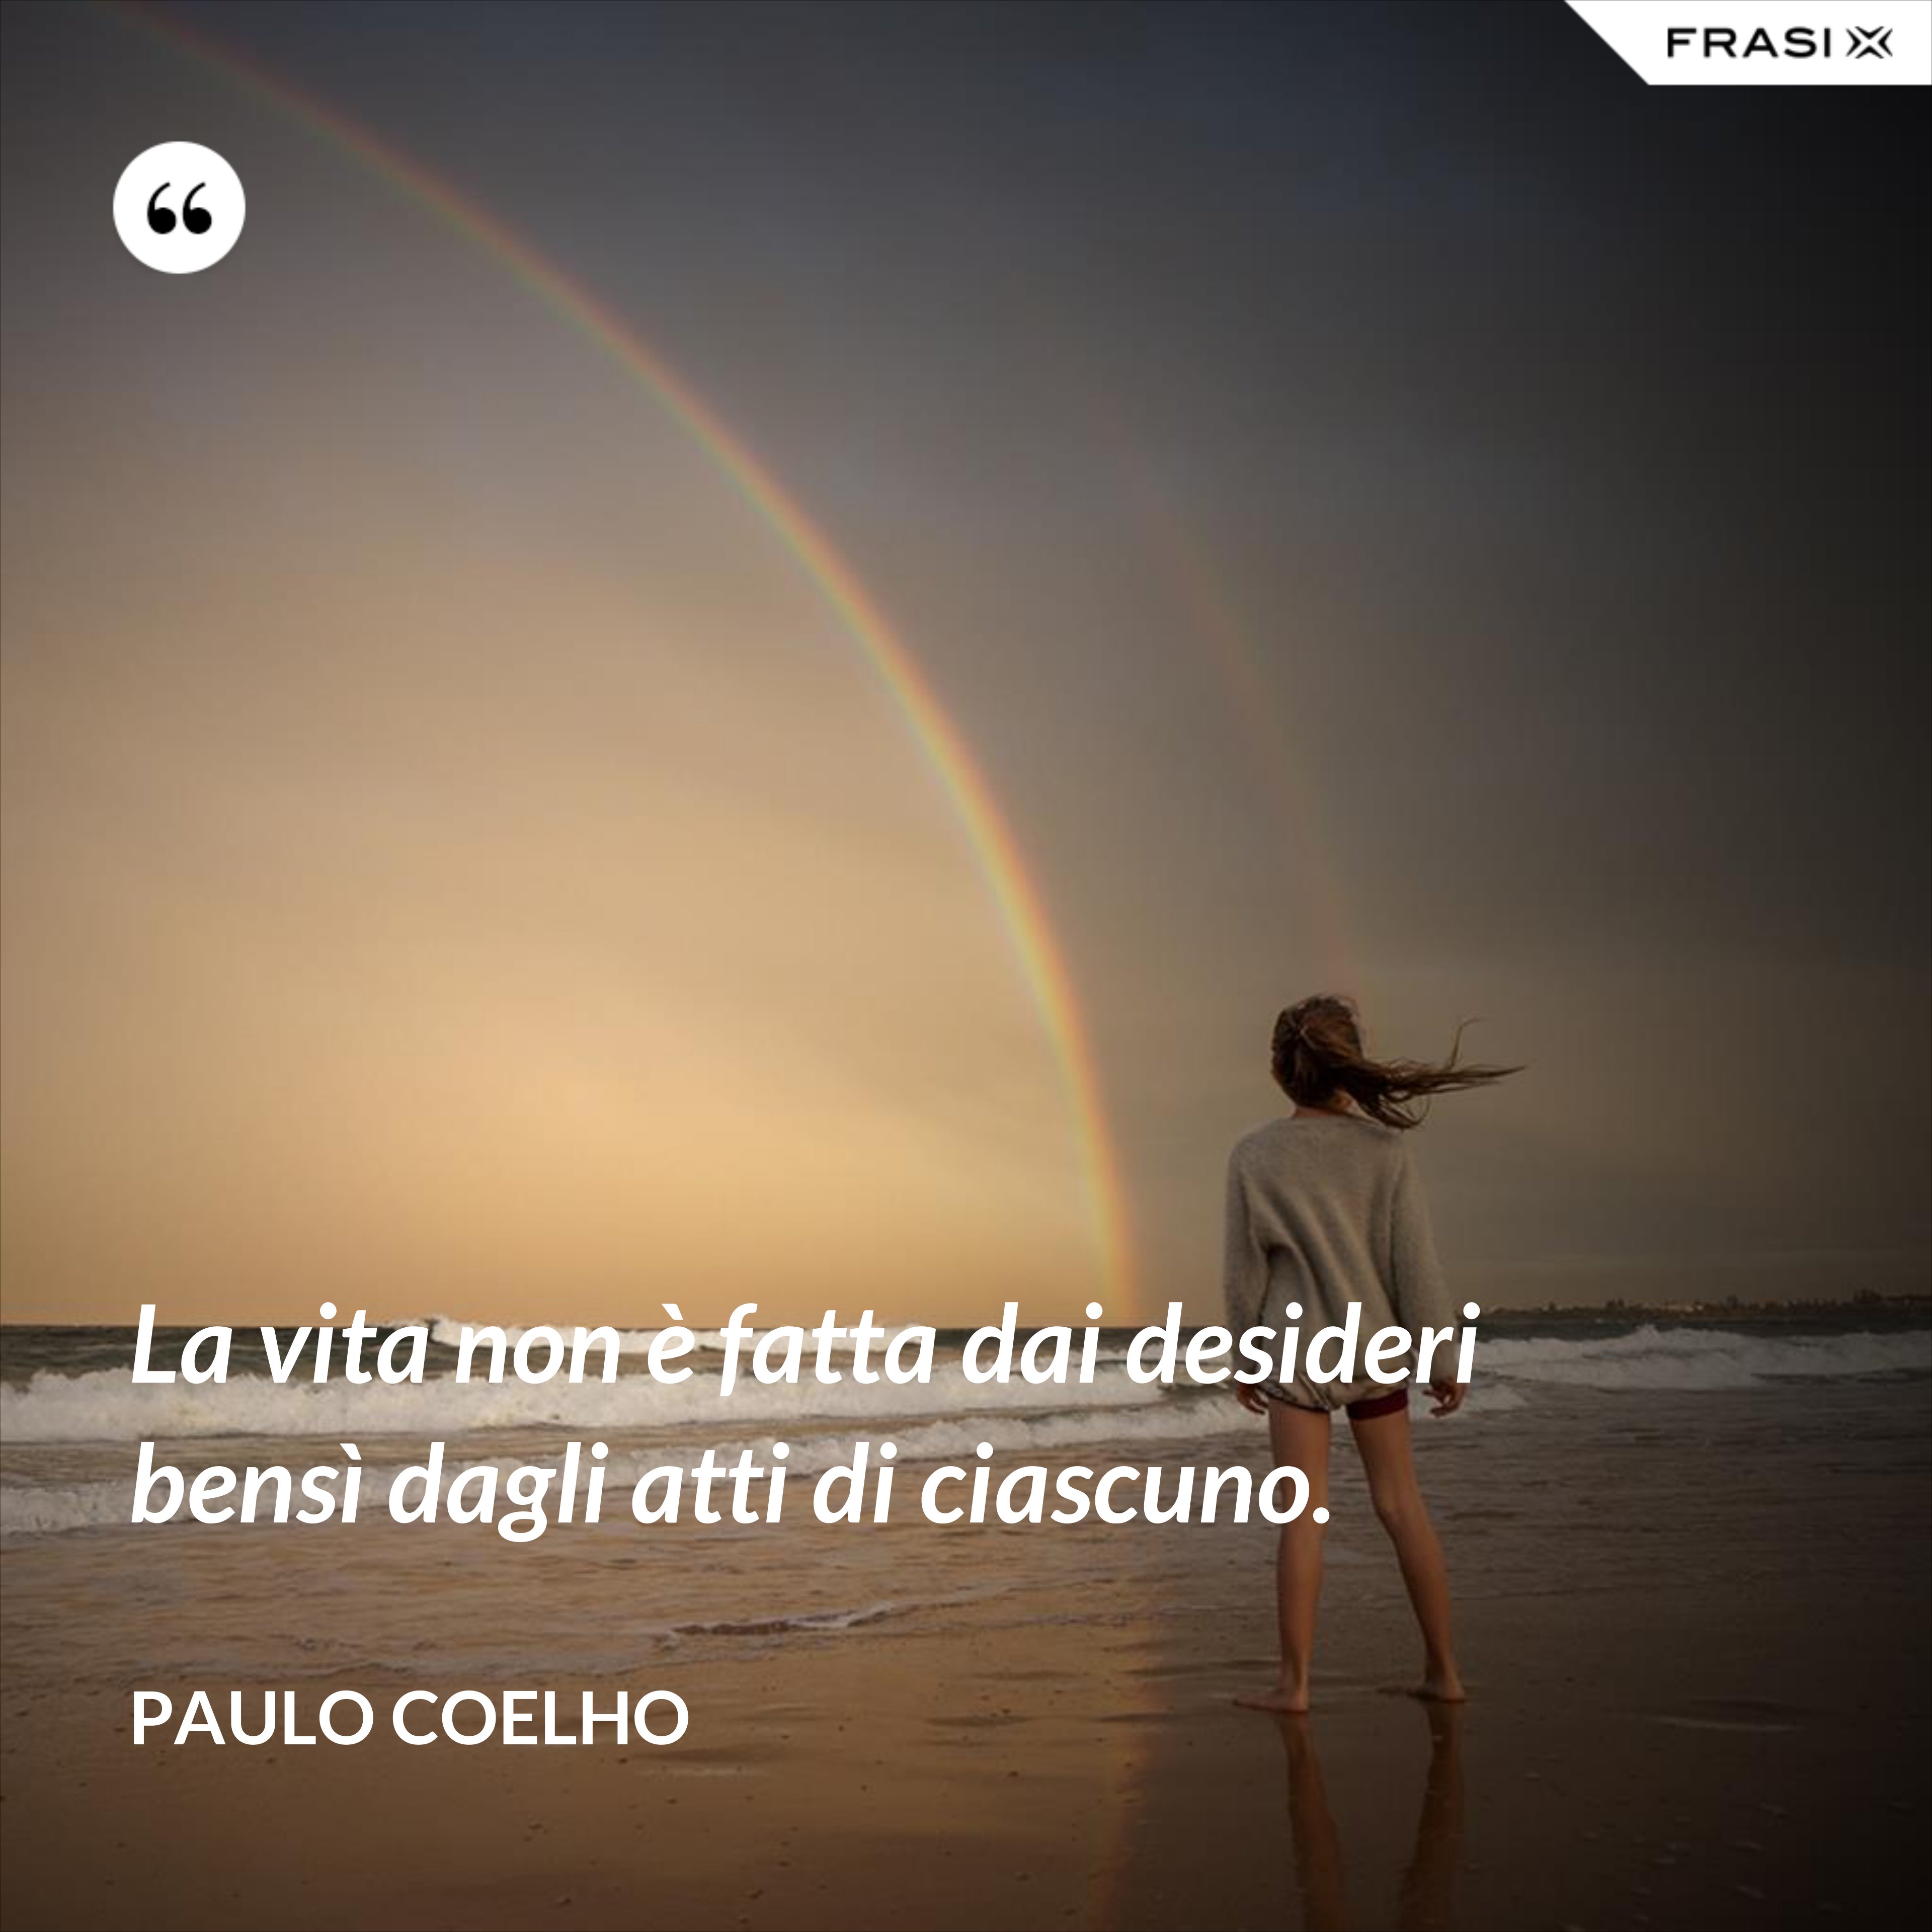 La vita non è fatta dai desideri bensì dagli atti di ciascuno. - Paulo Coelho